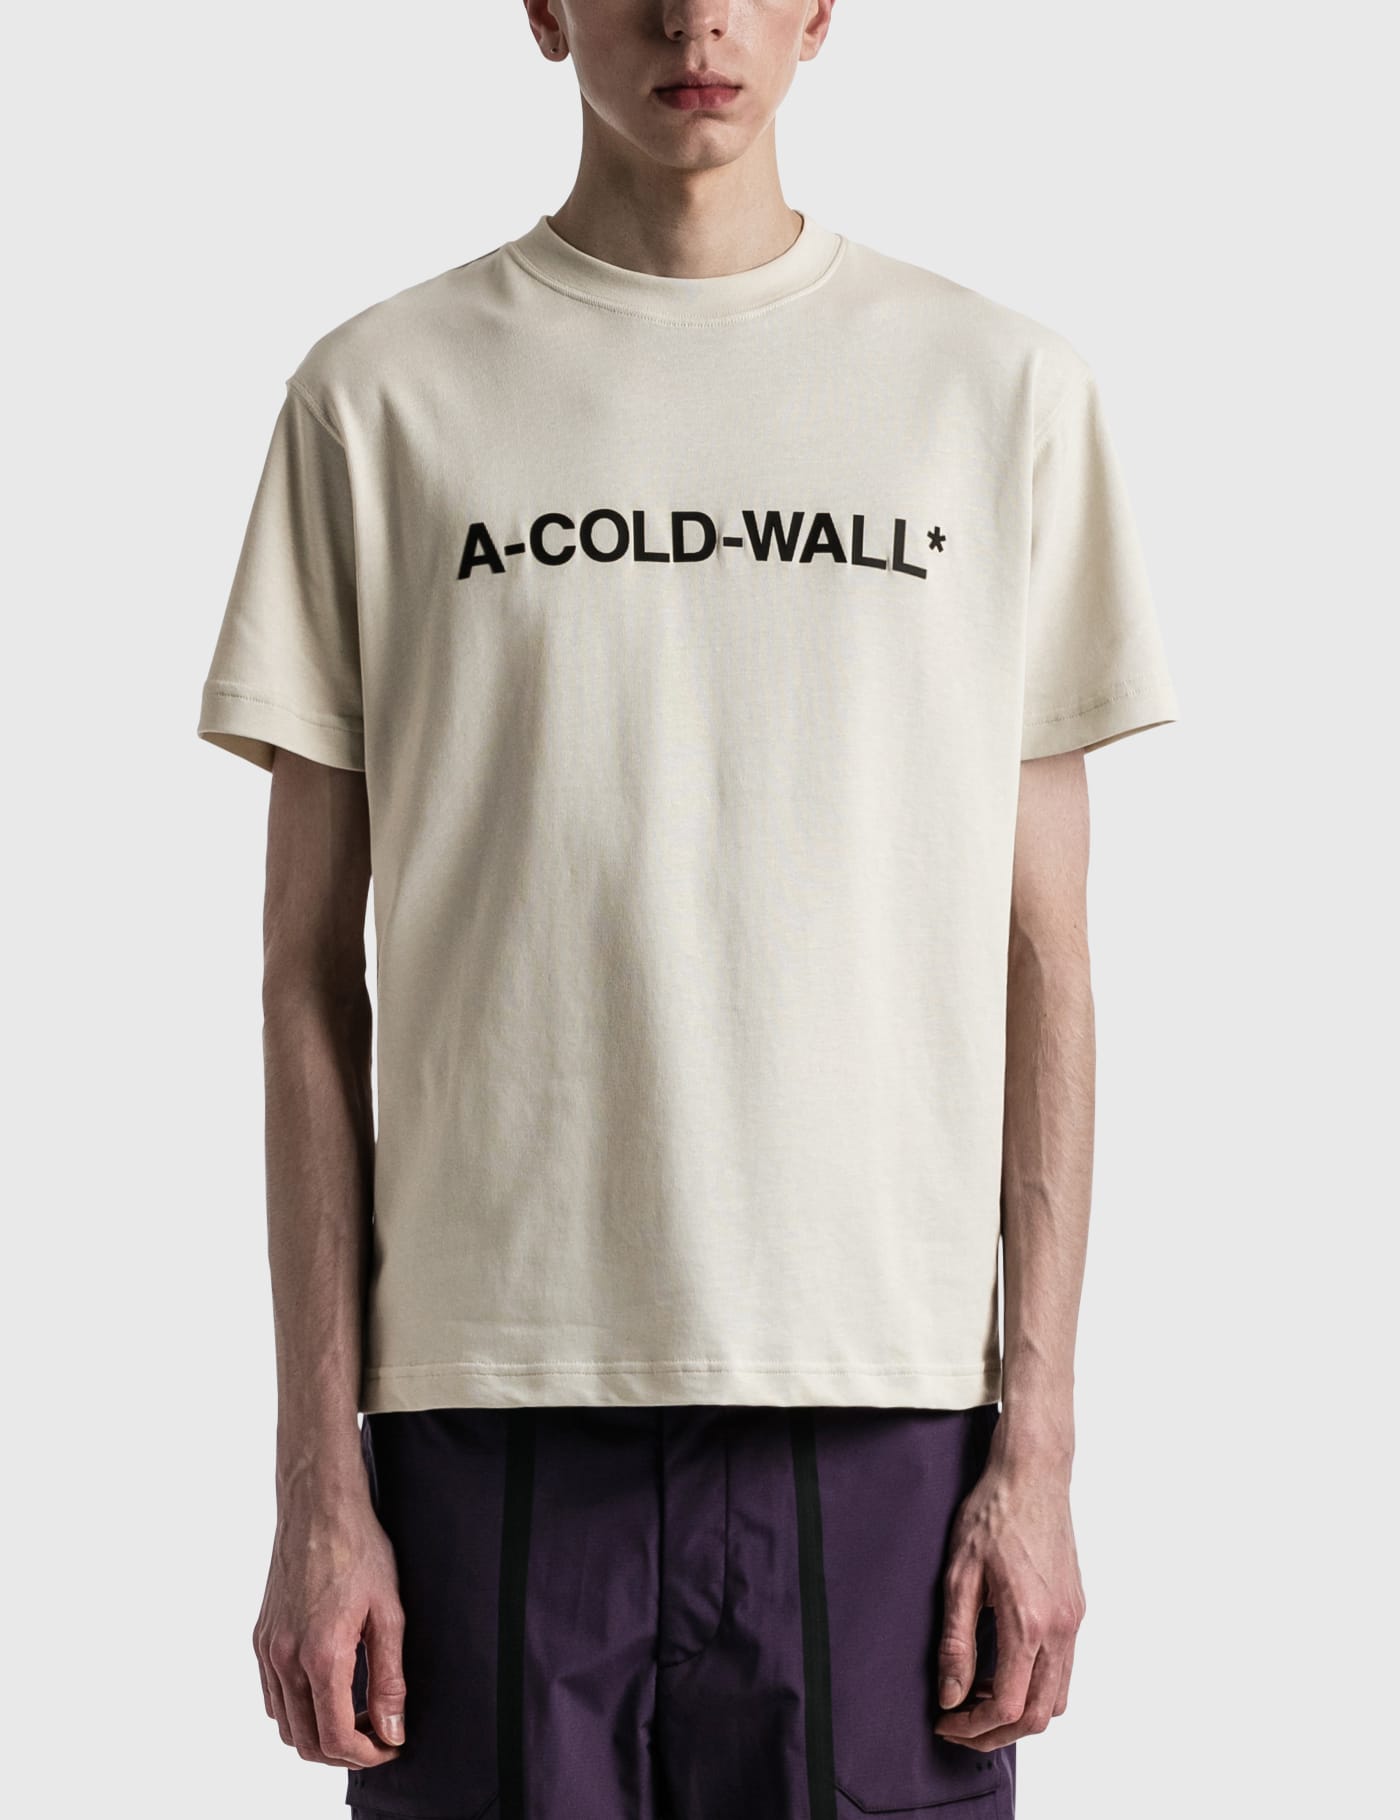 A-COLD-WALL* - エッセンシャル ロゴ Tシャツ | HBX -  ハイプビースト(Hypebeast)が厳選したグローバルファッション&ライフスタイル